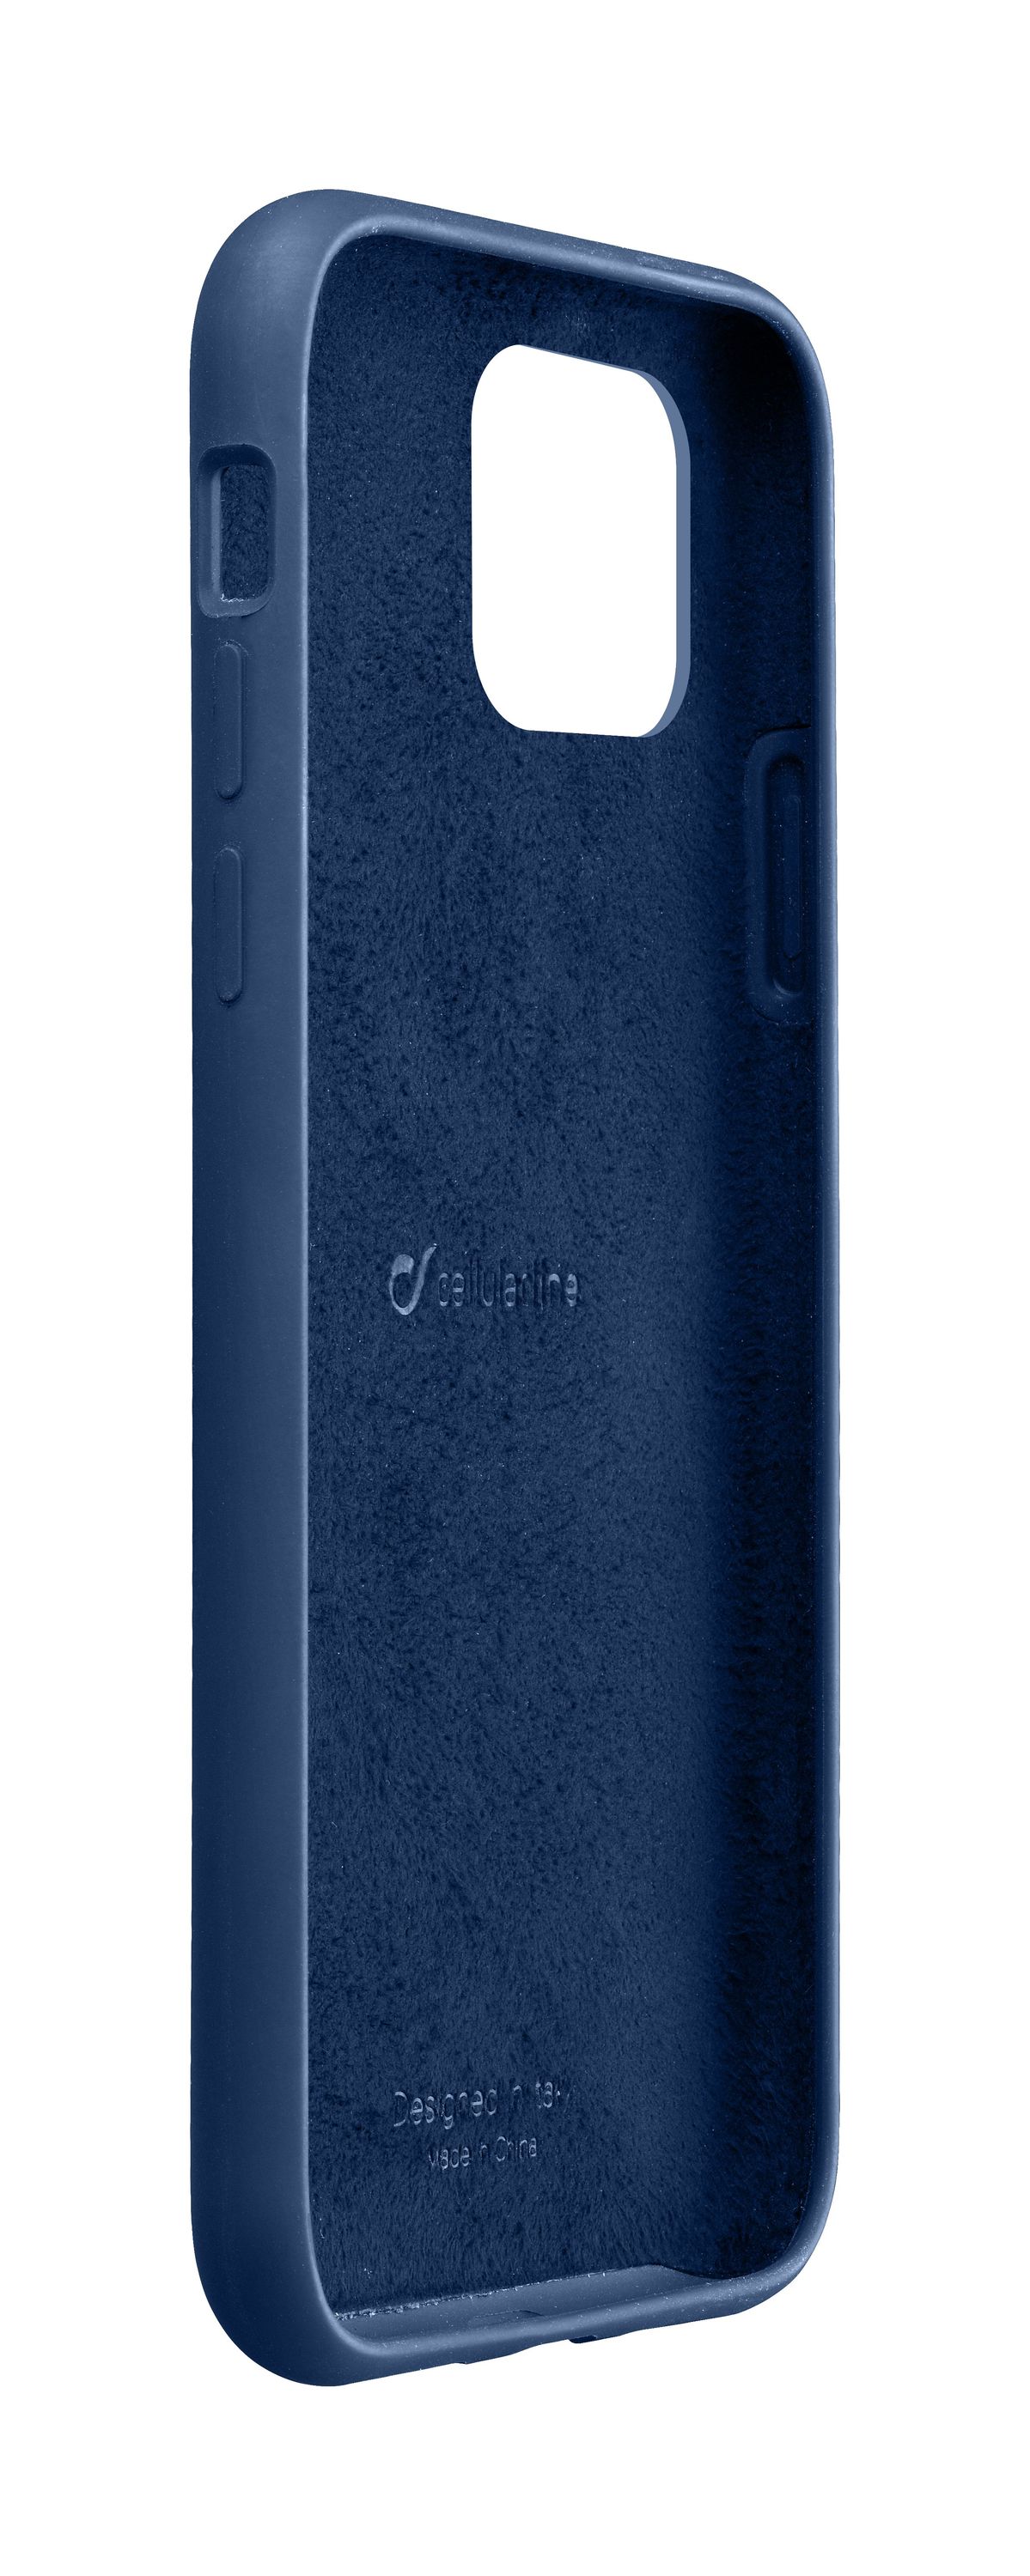 iPhone 11 Pro, case sensation, blue